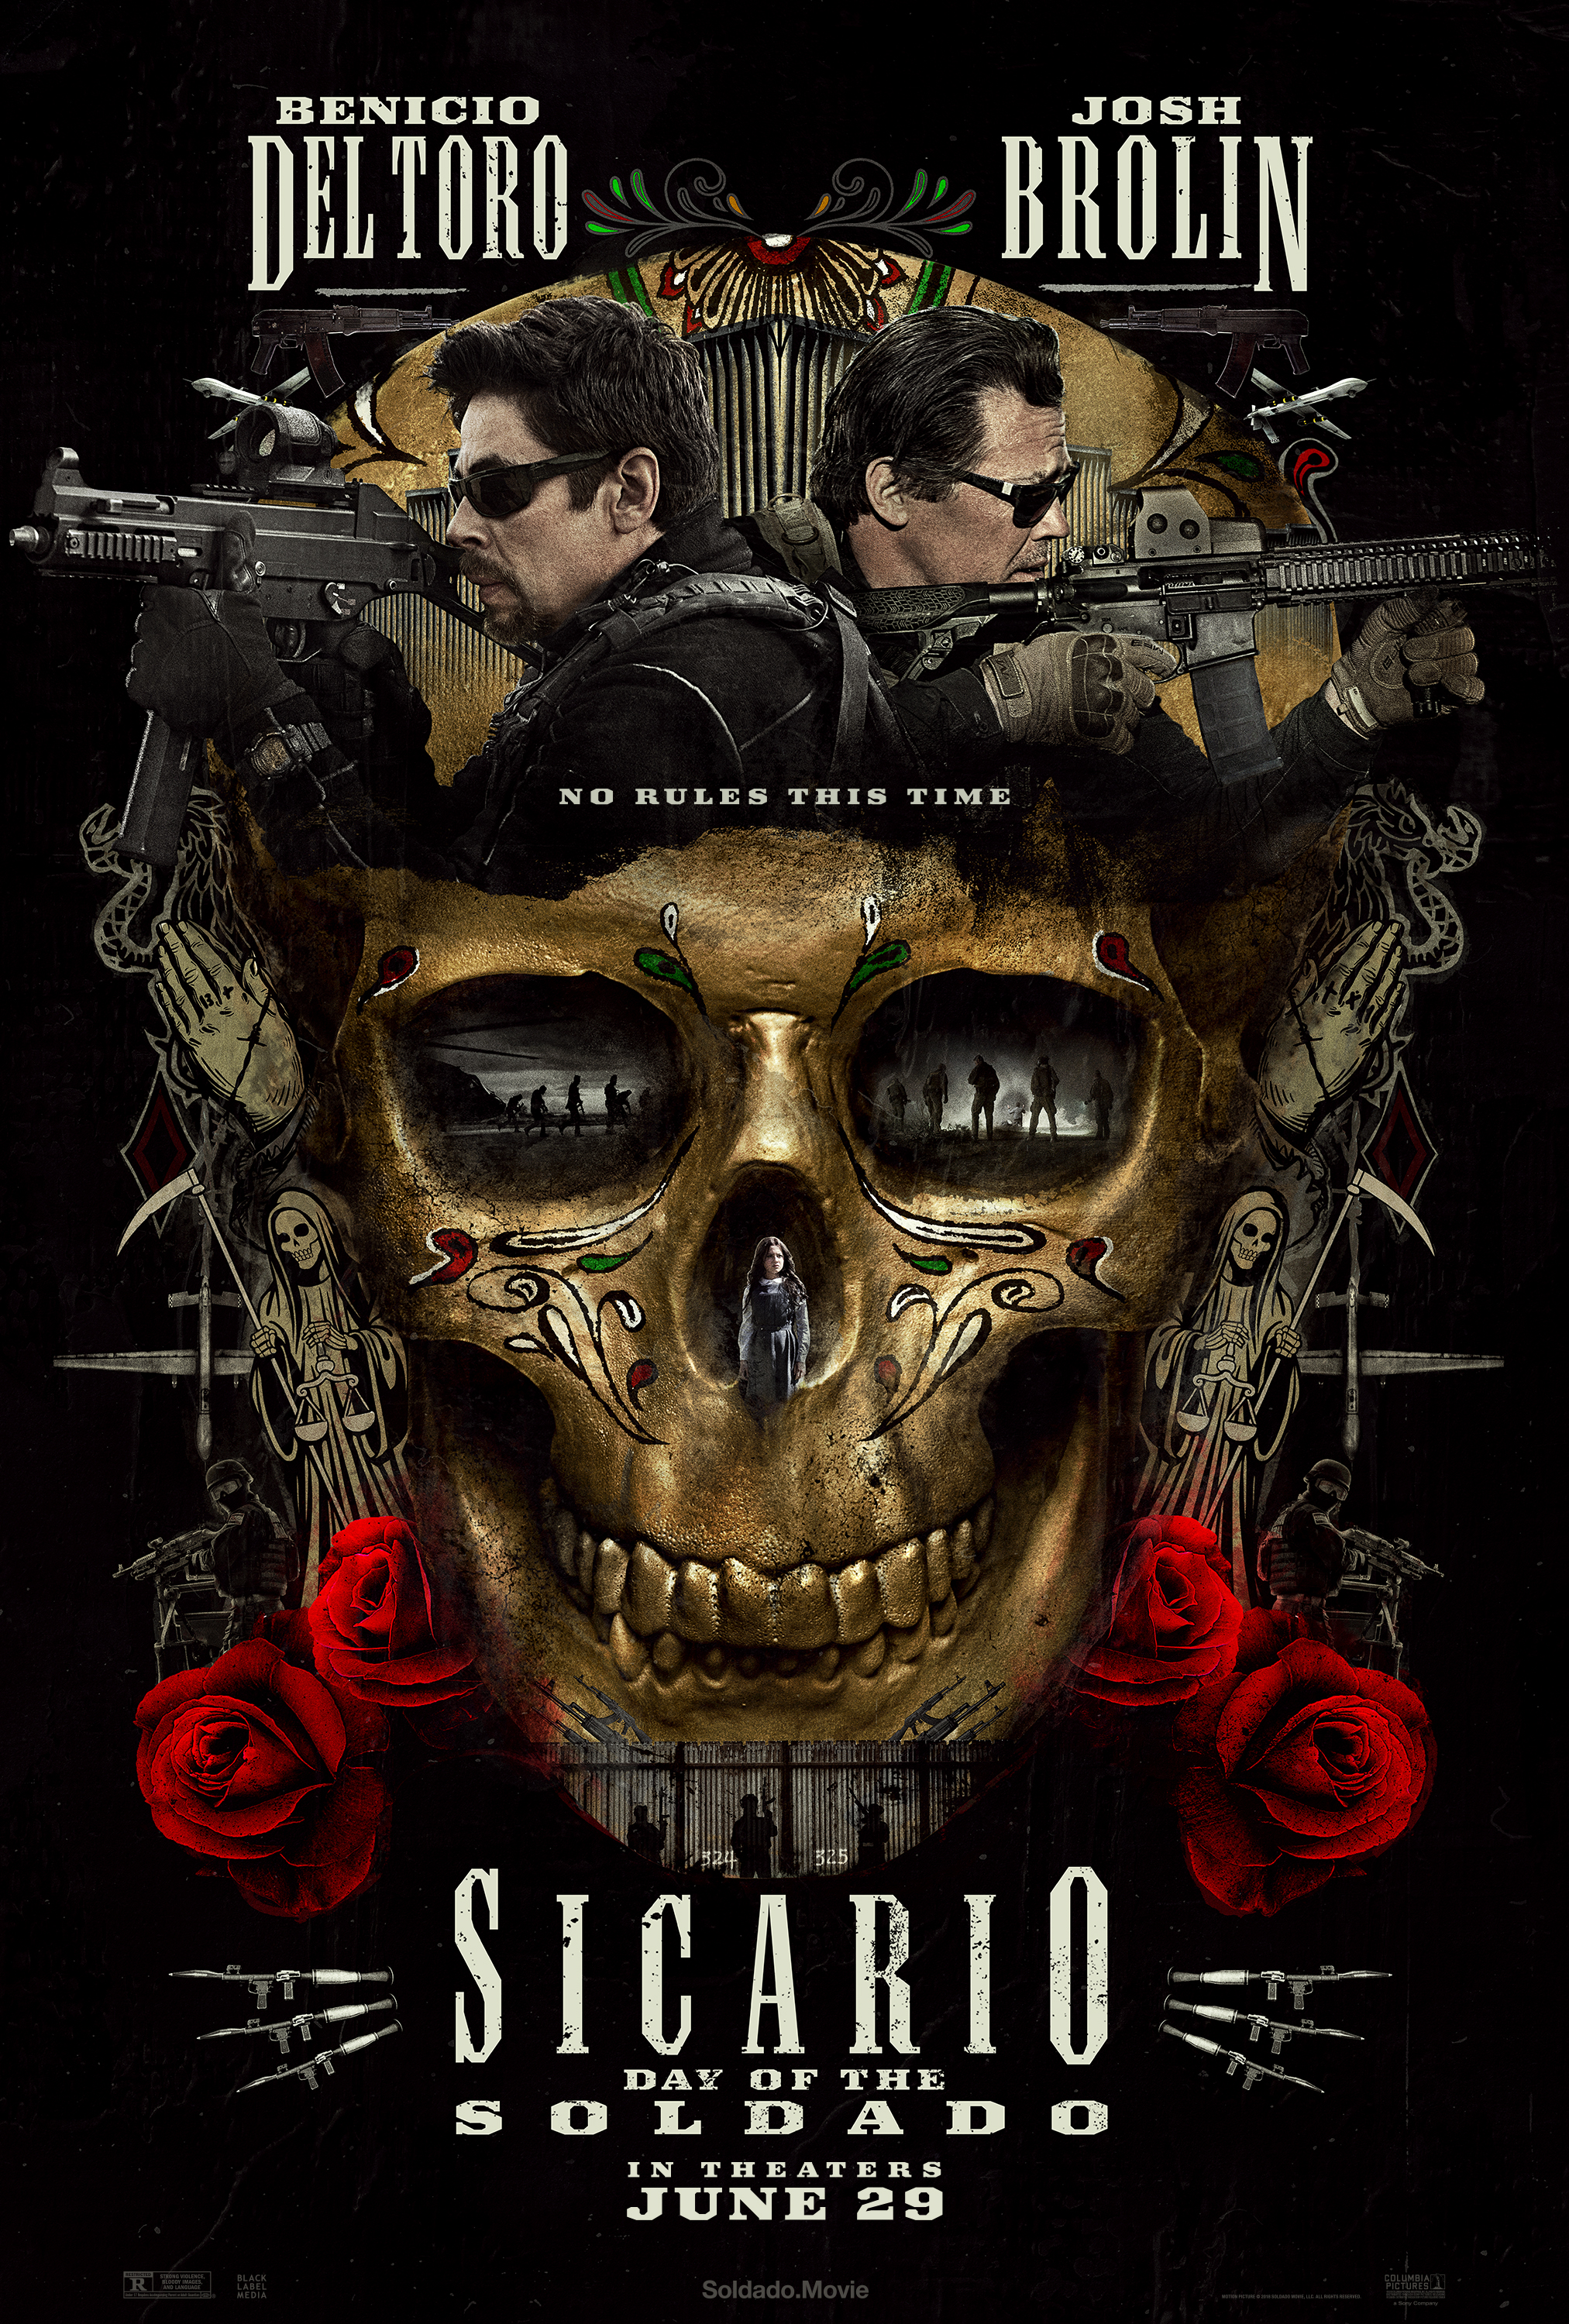 Nonton film Sicario Day of the Soldado layarkaca21 indoxx1 ganool online streaming terbaru